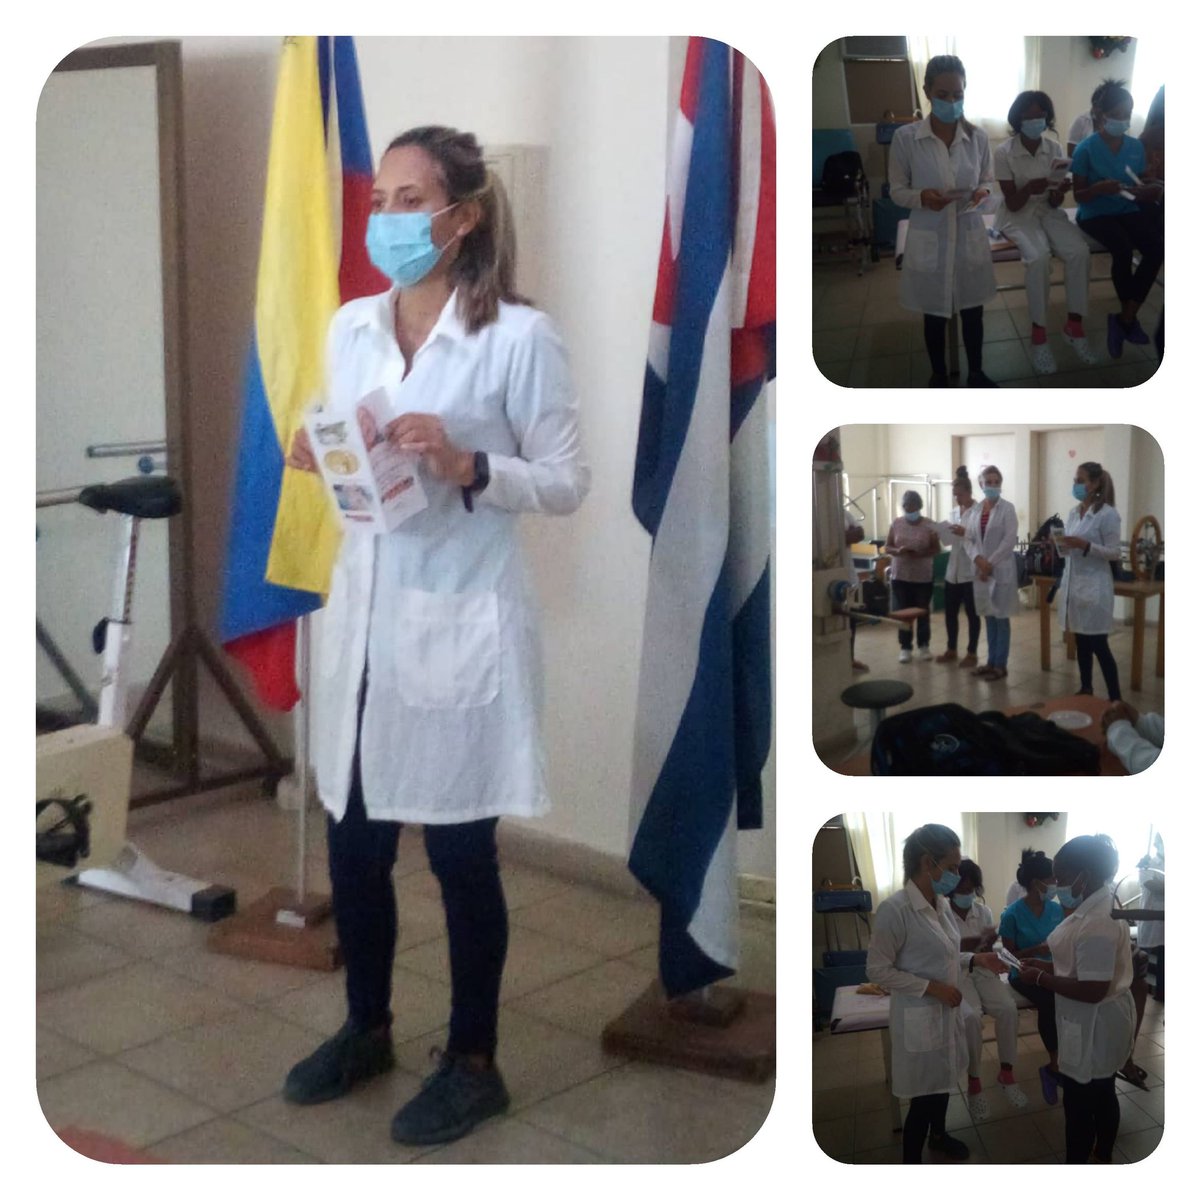 Matutino especial y charla educativa en conmemoración al día  de la salud bucodental, en CDI 3 Hugo Chávez Frías, Estado Nueva Esparta.
@capote_raciel 
@MedicaEsparta 
@cubacooperaven